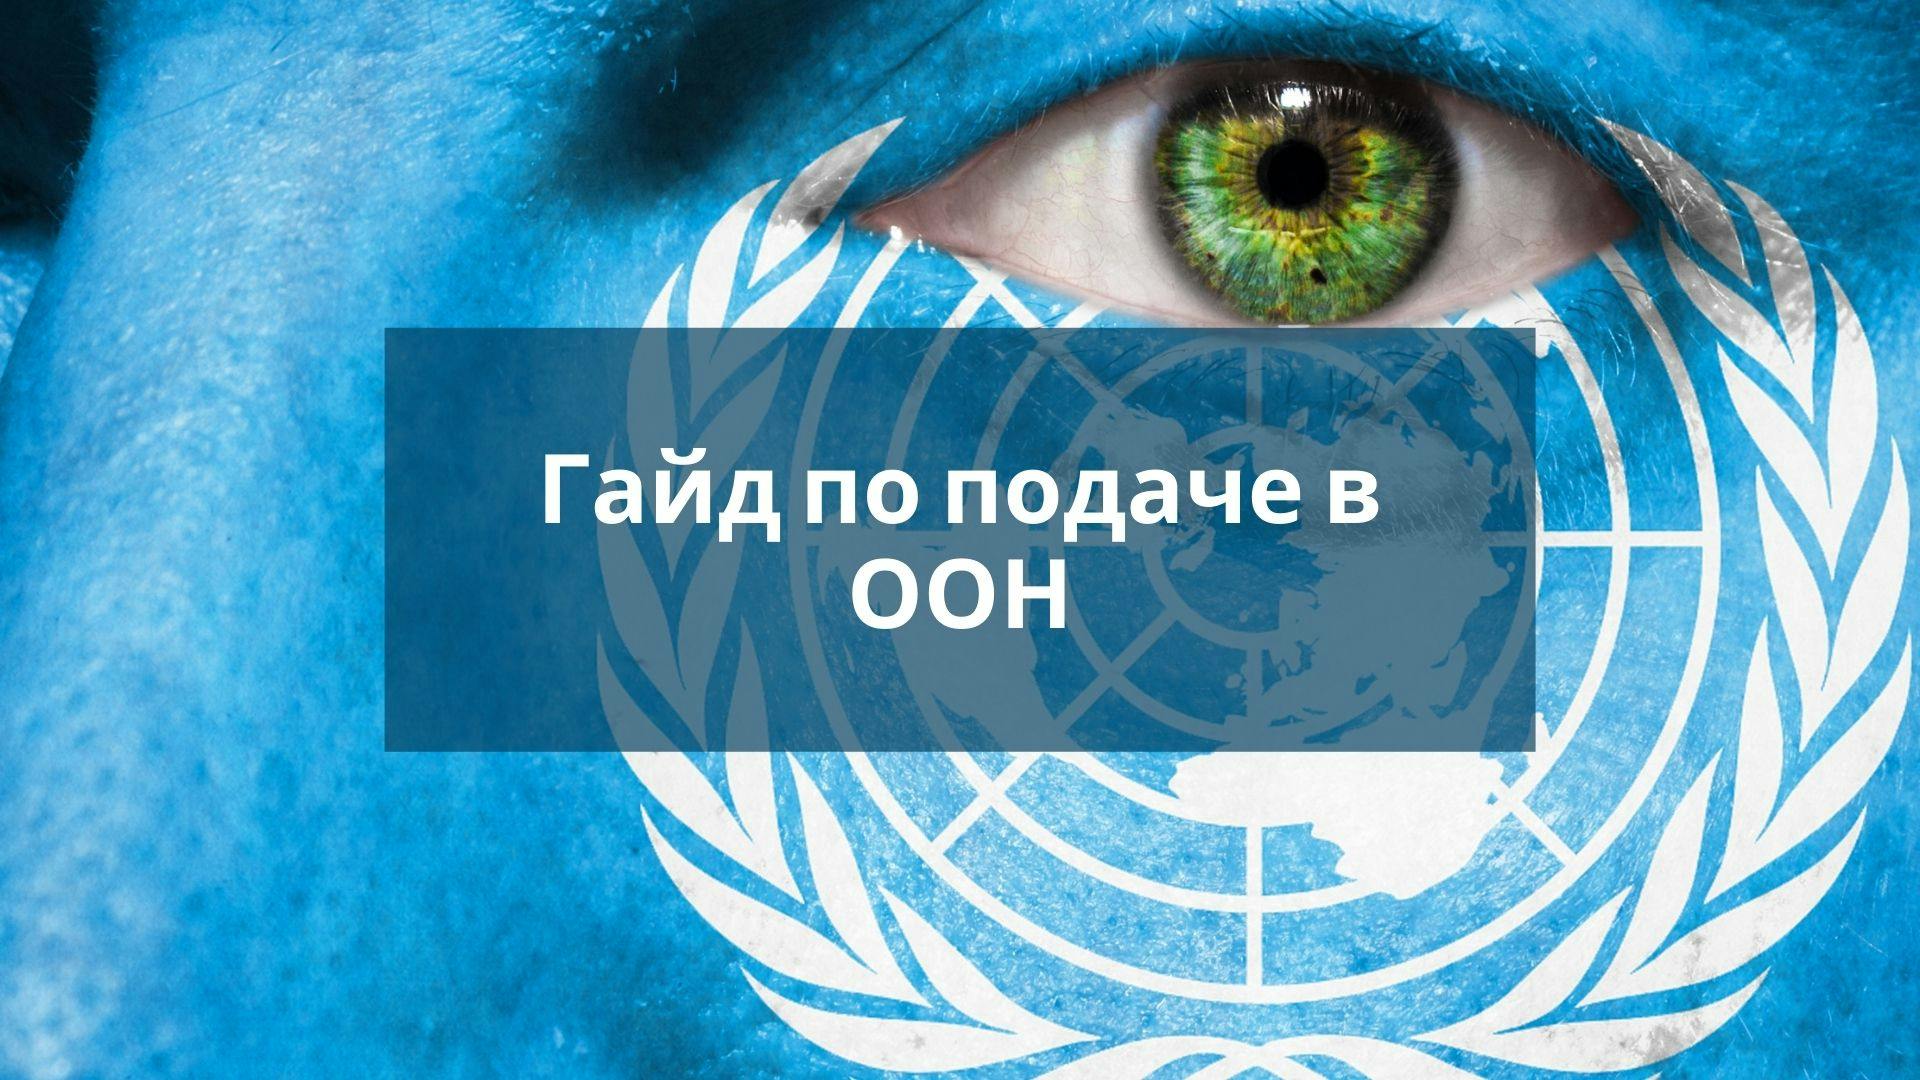 Гайд по подаче в ООН